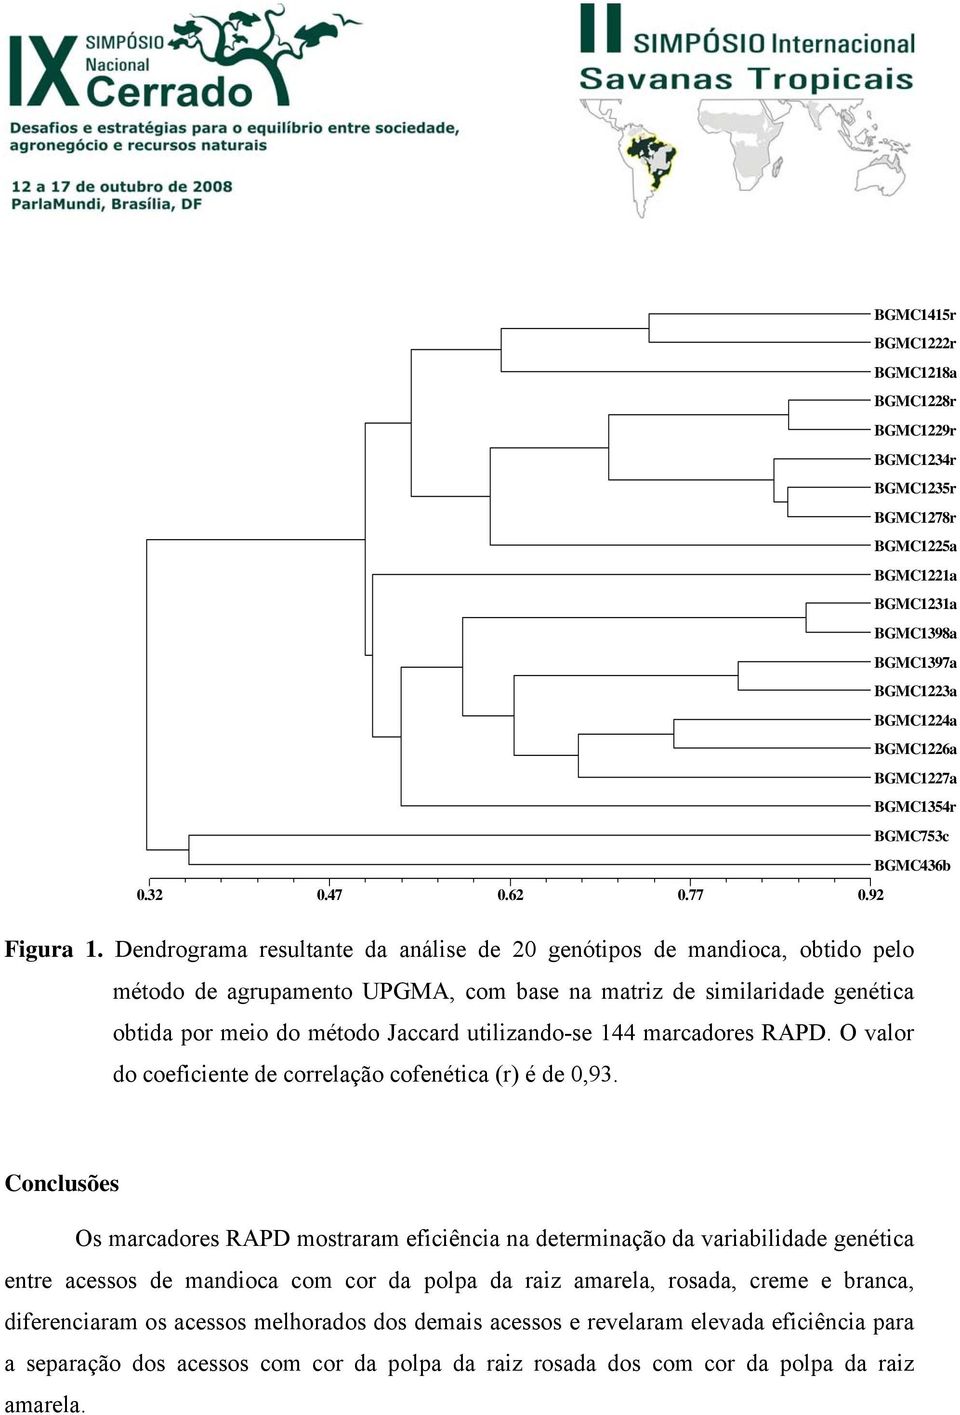 Dendrograma resultante da análise de 20 genótipos de mandioca, obtido pelo método de agrupamento UPGMA, com base na matriz de similaridade genética obtida por meio do método Jaccard utilizando-se 144